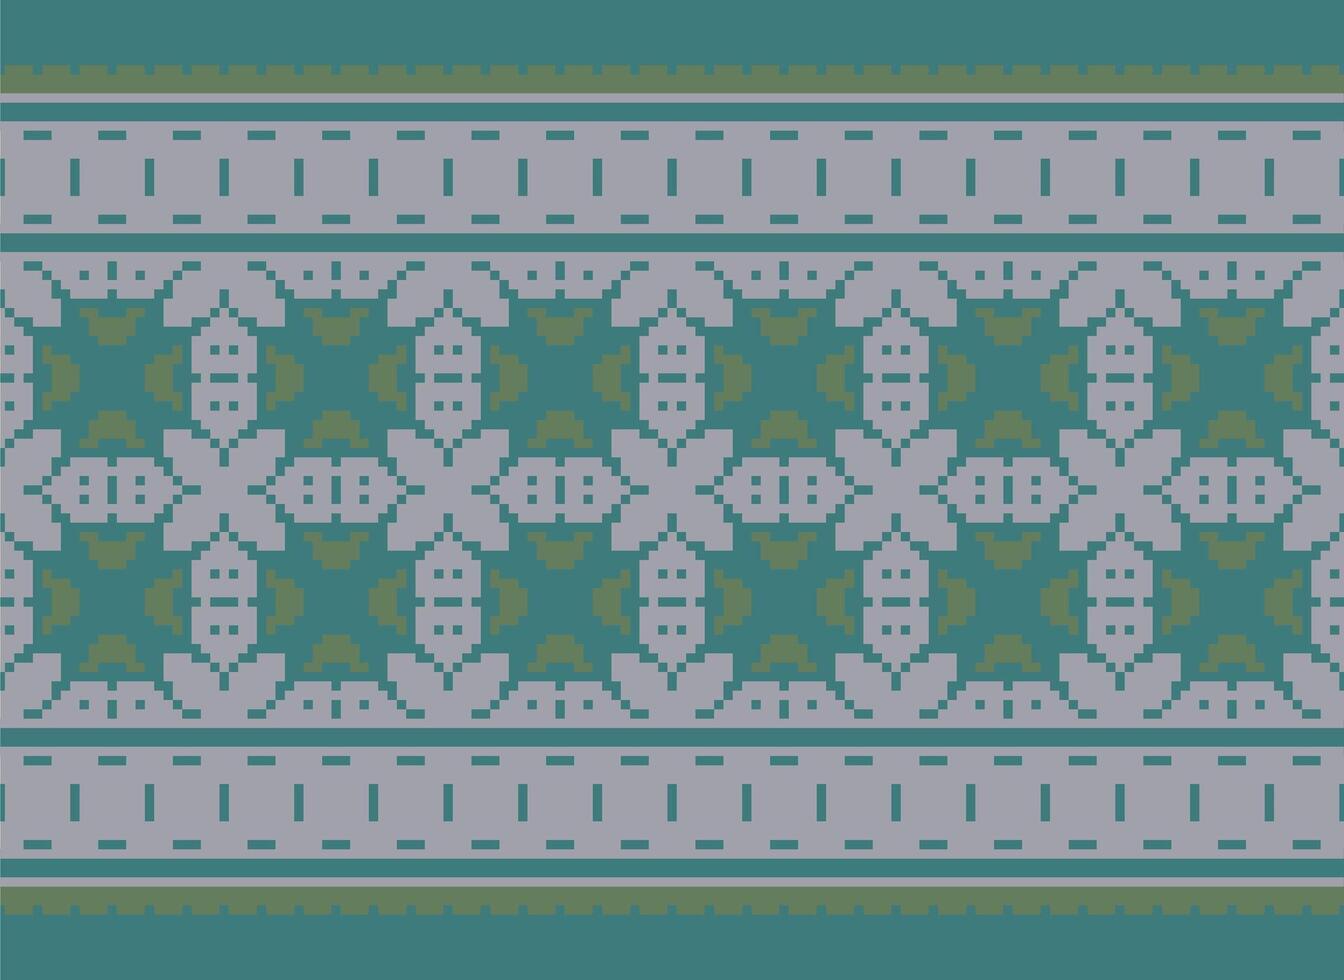 attraversare cucire. pixel. geometrico etnico orientale senza soluzione di continuità modello tradizionale sfondo. in stile azteco astratto vettore illustrazione. design per tessile, tenda, tappeto, sfondo, vestiario, involucro